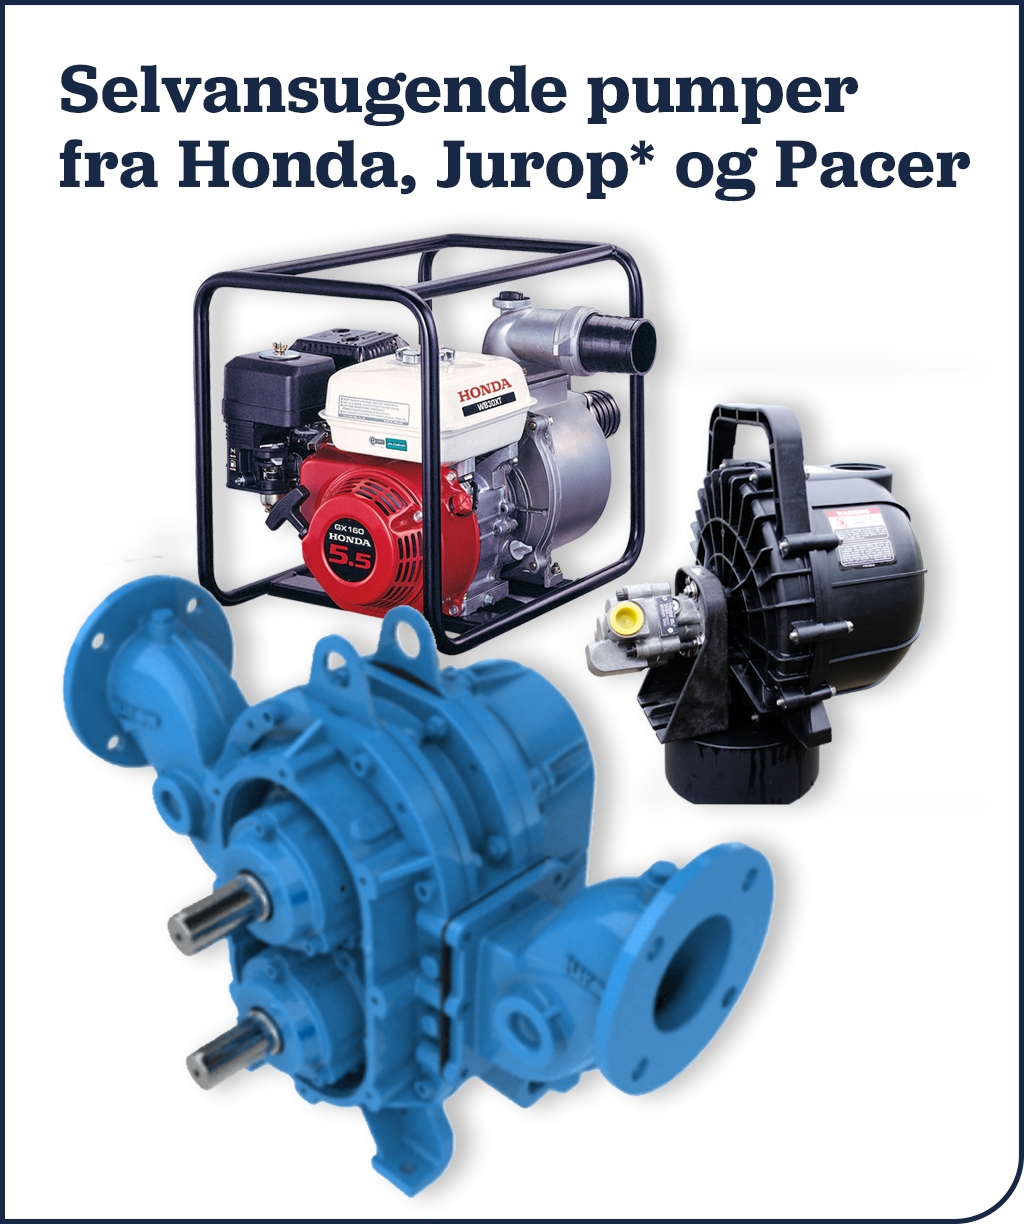 Selvansugende pumper fra Honda, Jurop* og Pacer